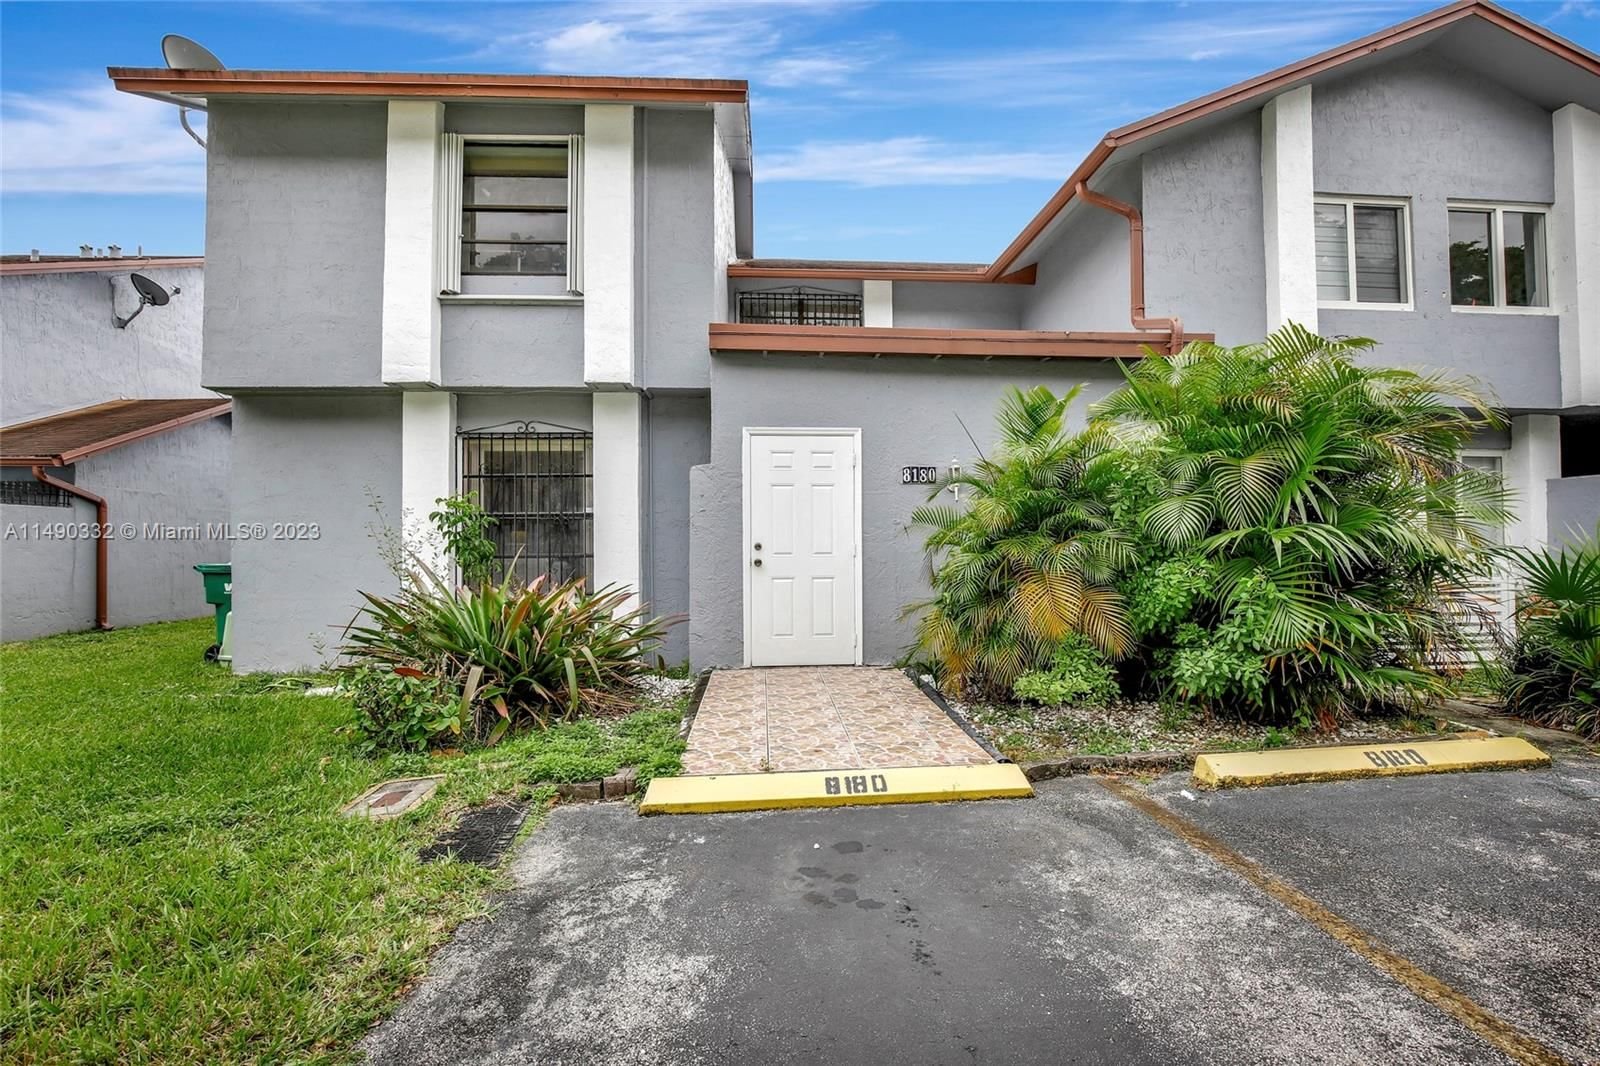 Real estate property located at 8180 99th Ter #2261, Miami-Dade County, HYDRA VILLAS AT SAMARI LK, Hialeah Gardens, FL